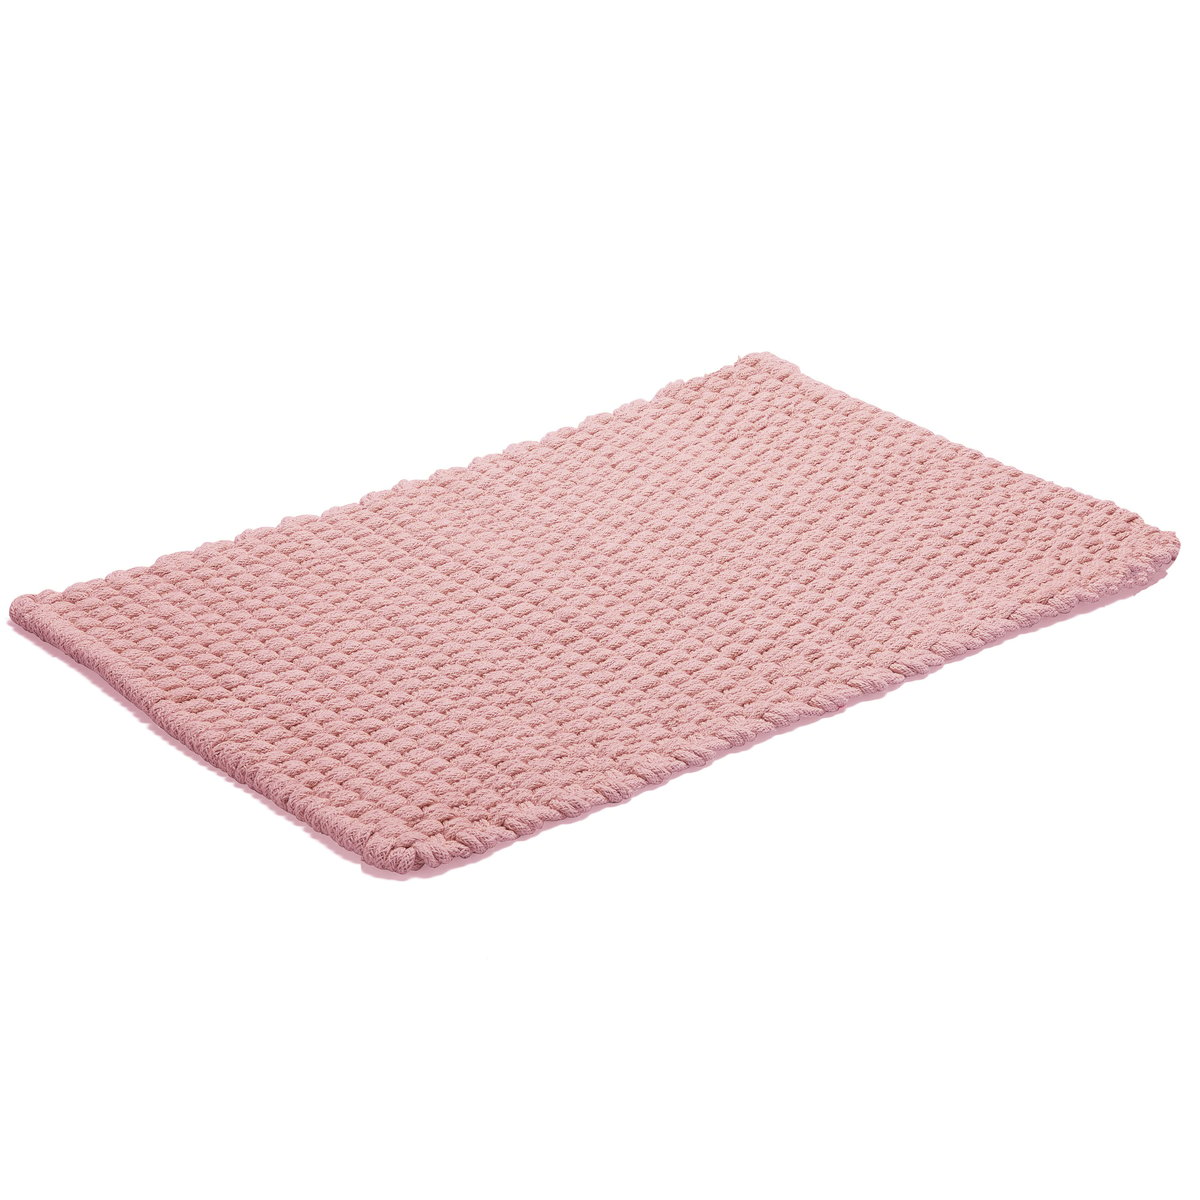 Bilde av ETOL Design Rope gulvteppe 70x120 cm Dusty pink